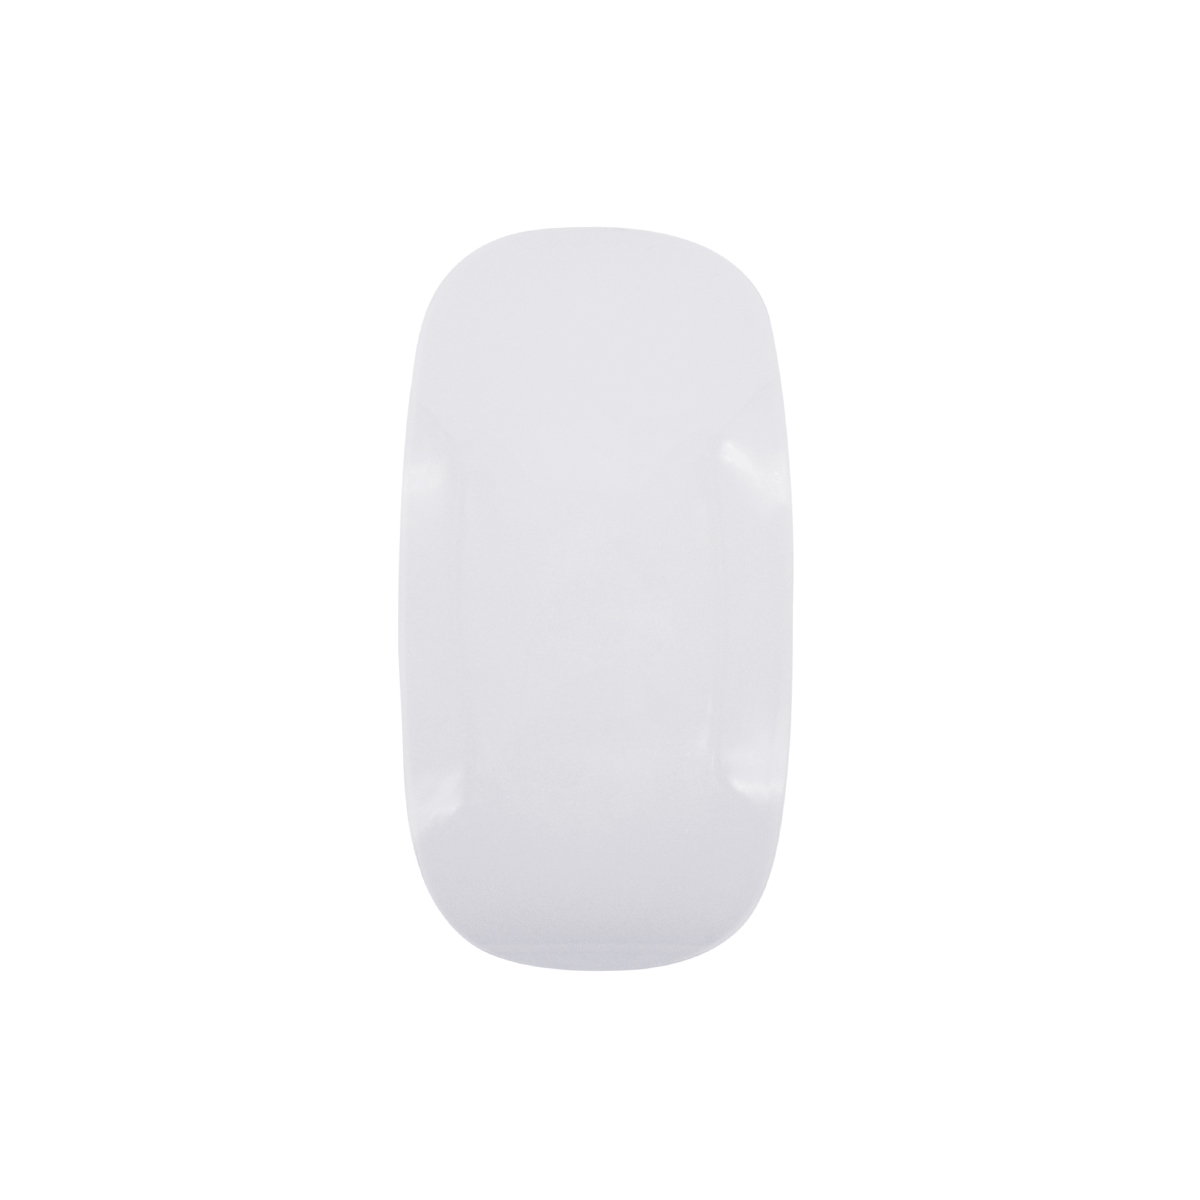 Мышь компьютерная с сенсорным скроллом Sensation (белый), белый, пластик